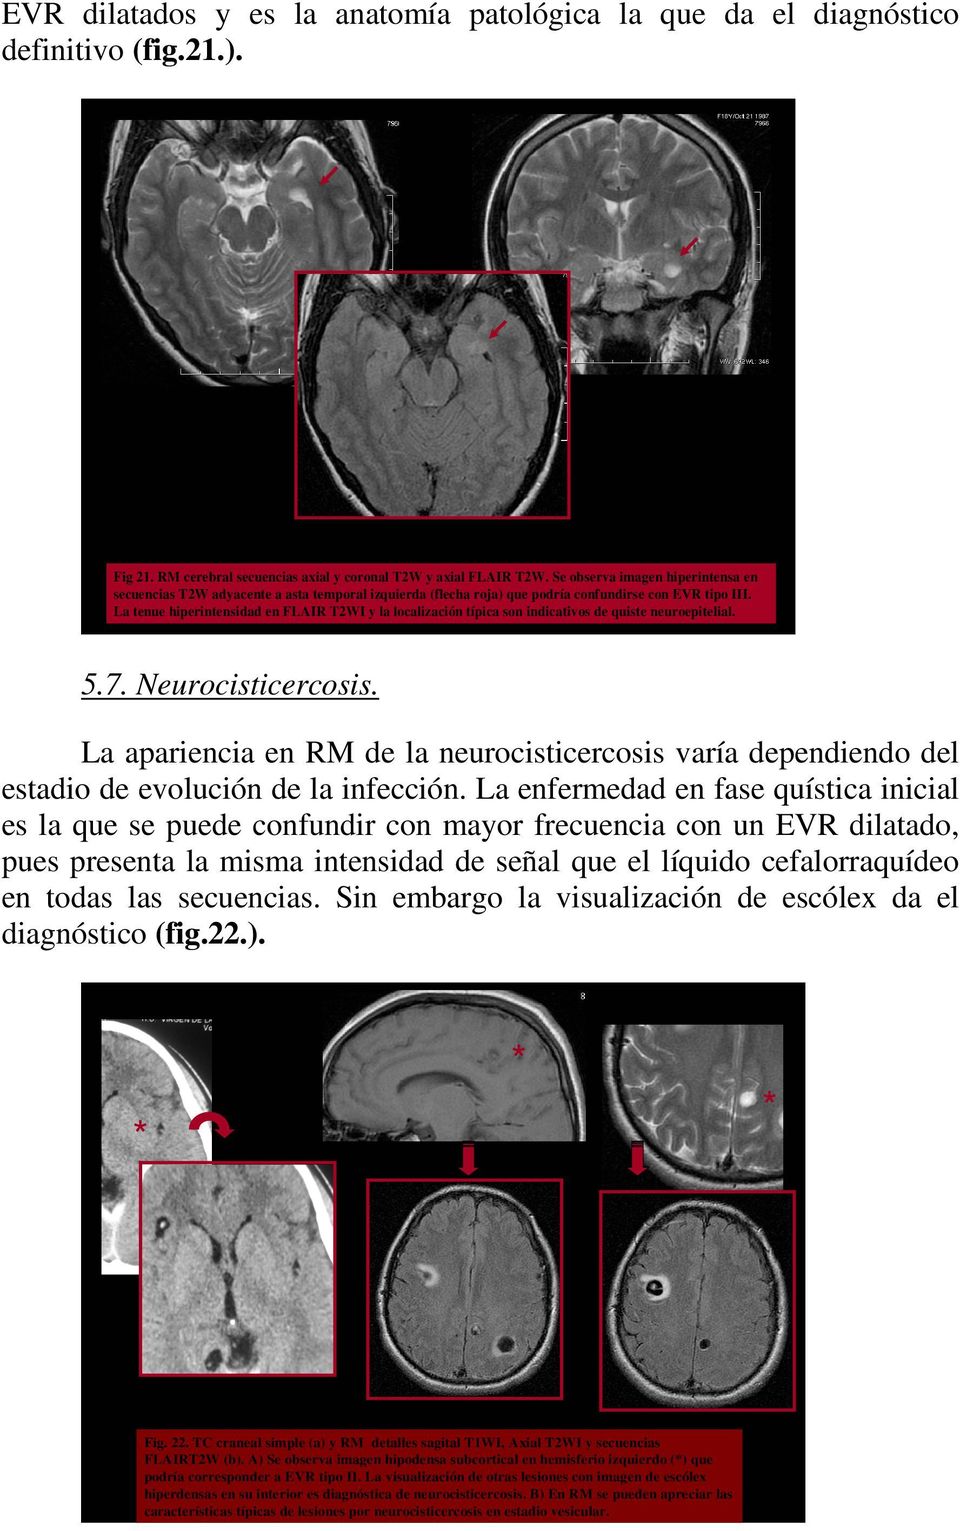 La tenue hiperintensidad en FLAIR T2WI y la localización típica son indicativos de quiste neuroepitelial. 5.7. Neurocisticercosis.